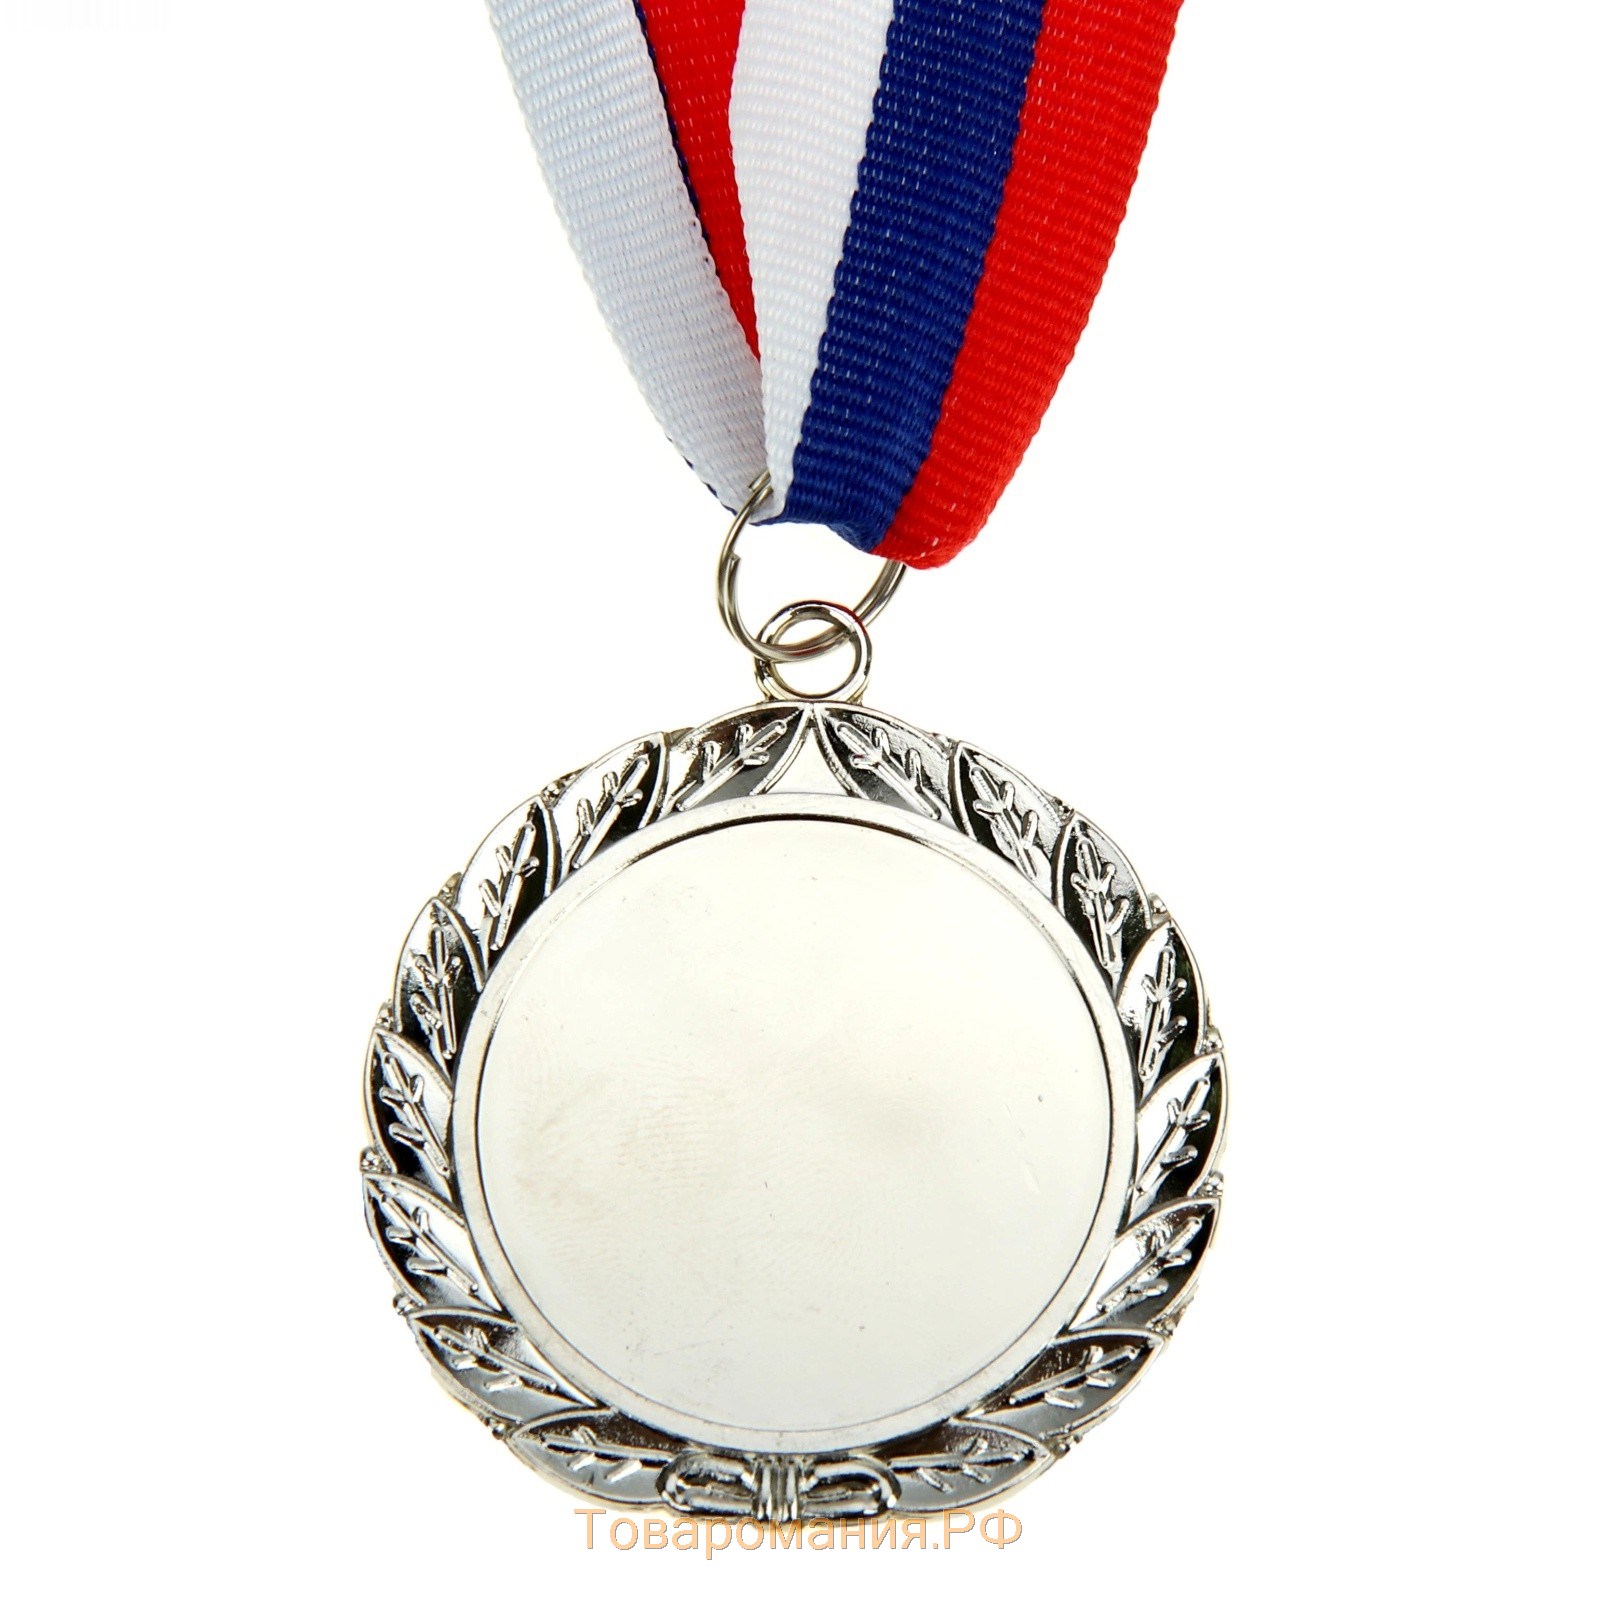 Медаль призовая 001 диам 5 см. 2 место. Цвет сер. С лентой